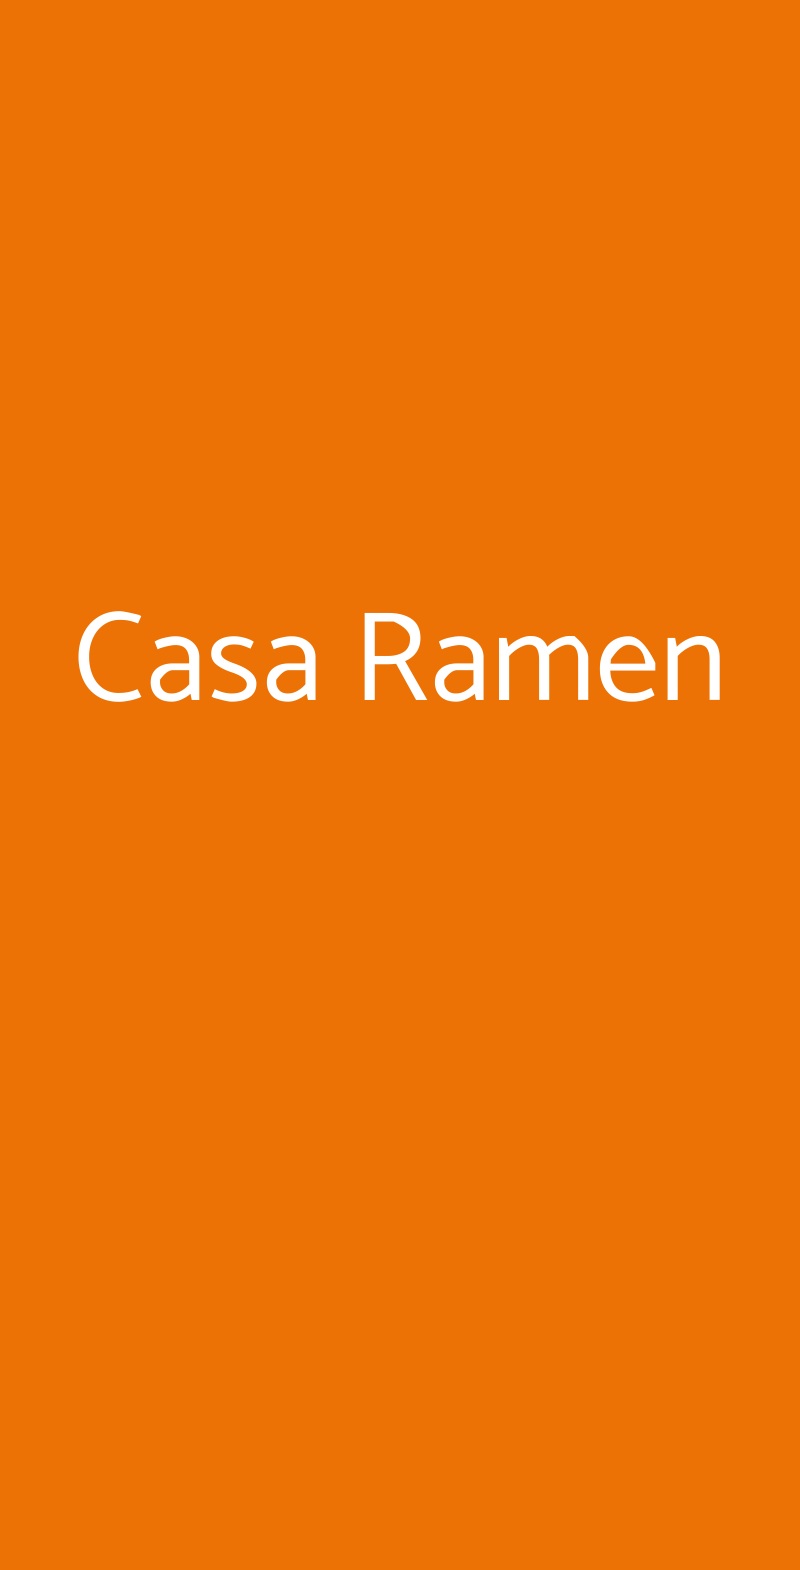 Casa Ramen Milano menù 1 pagina